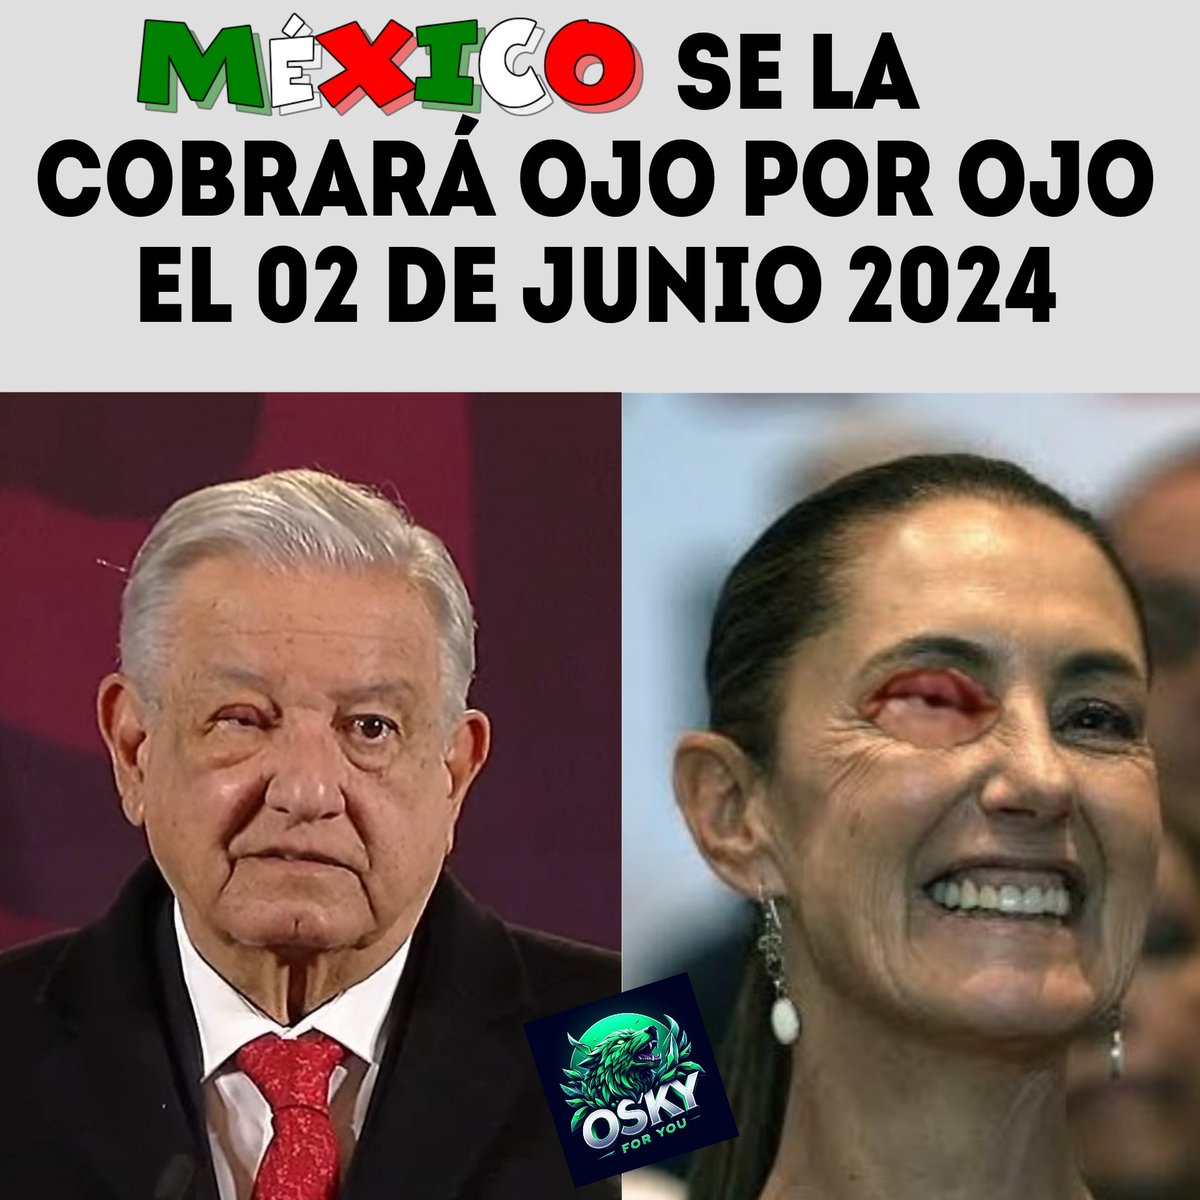 El #02DeJunio México se la cobrará ojo por ojo y con intereses todo el daño que ha hecho el #NarcoPresidenteAMLO, su  #NarcoGobierno  y su  #NarcoCandidataSheimbaum.

#NosVemosEnLasUrnas✓🇲🇽
#XochiltGalvezPresidenta2024✓ 🇲🇽